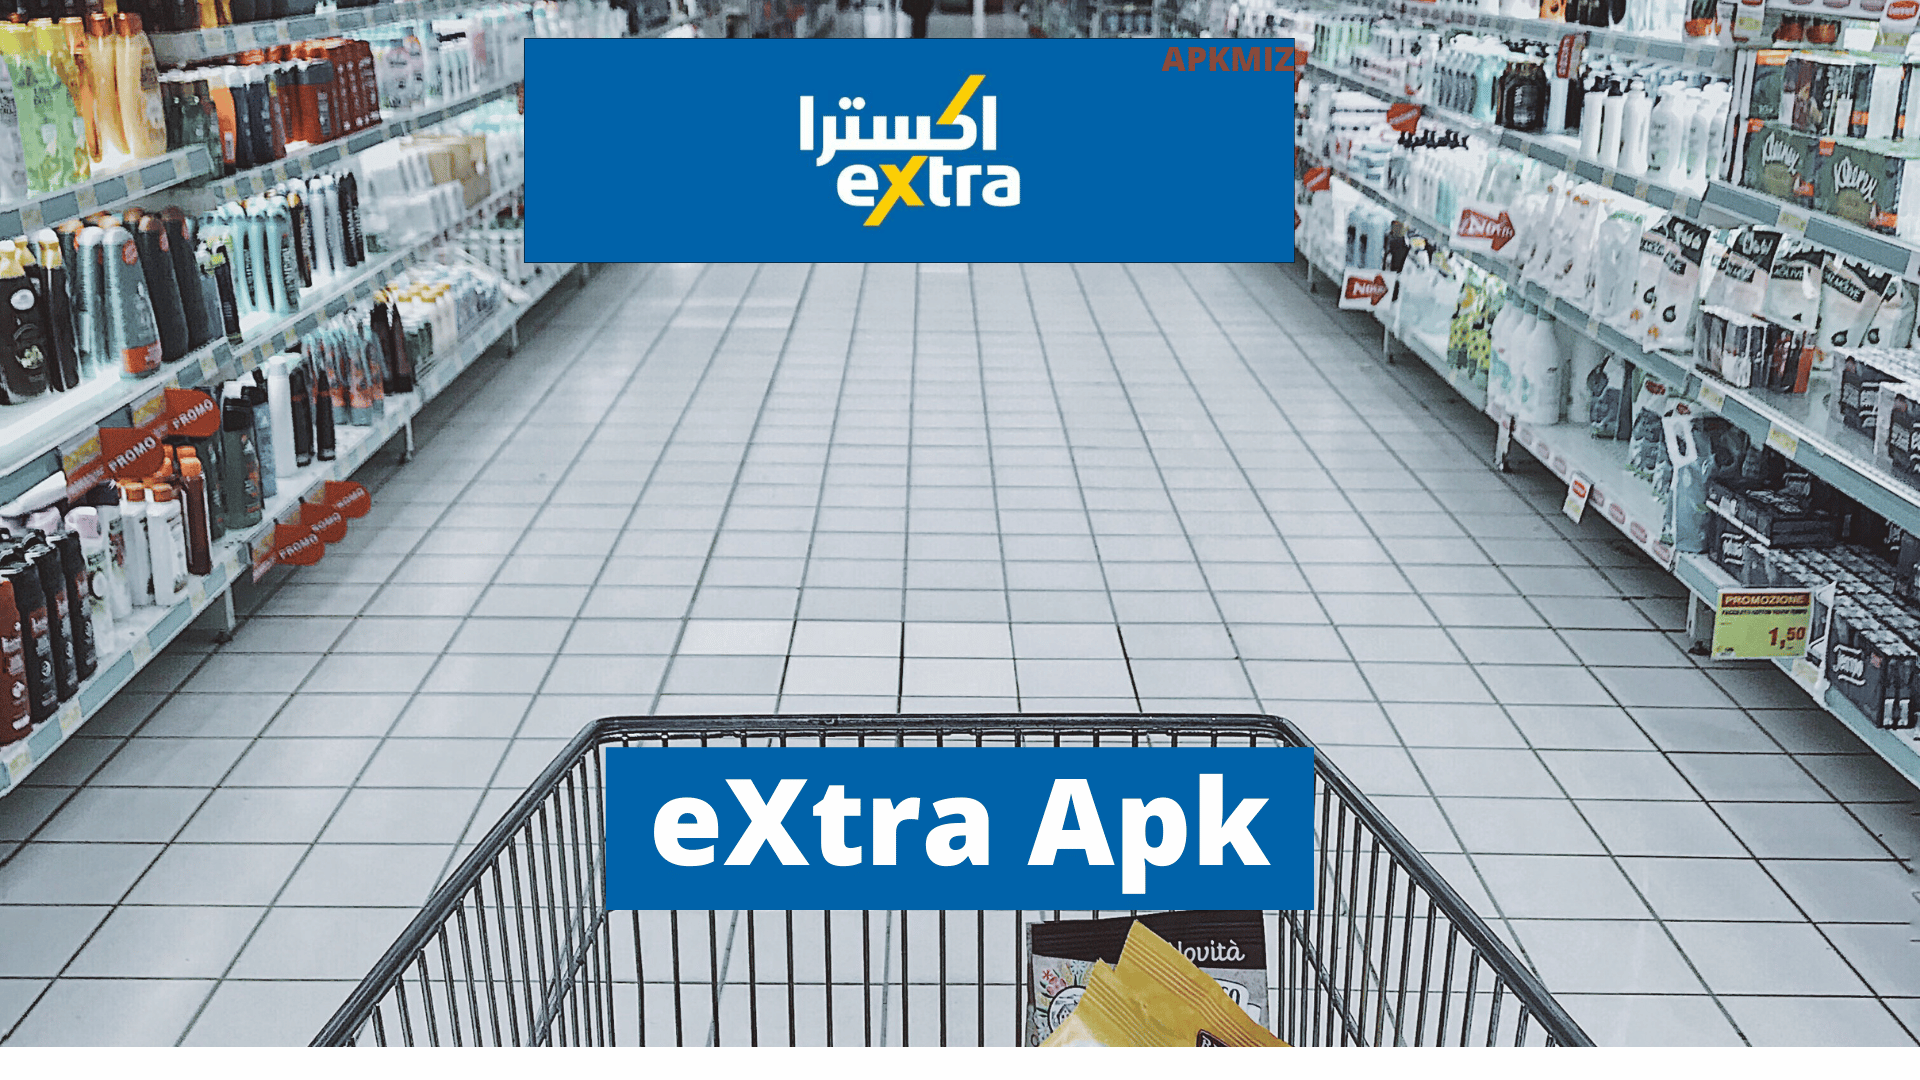 eXtra Apk